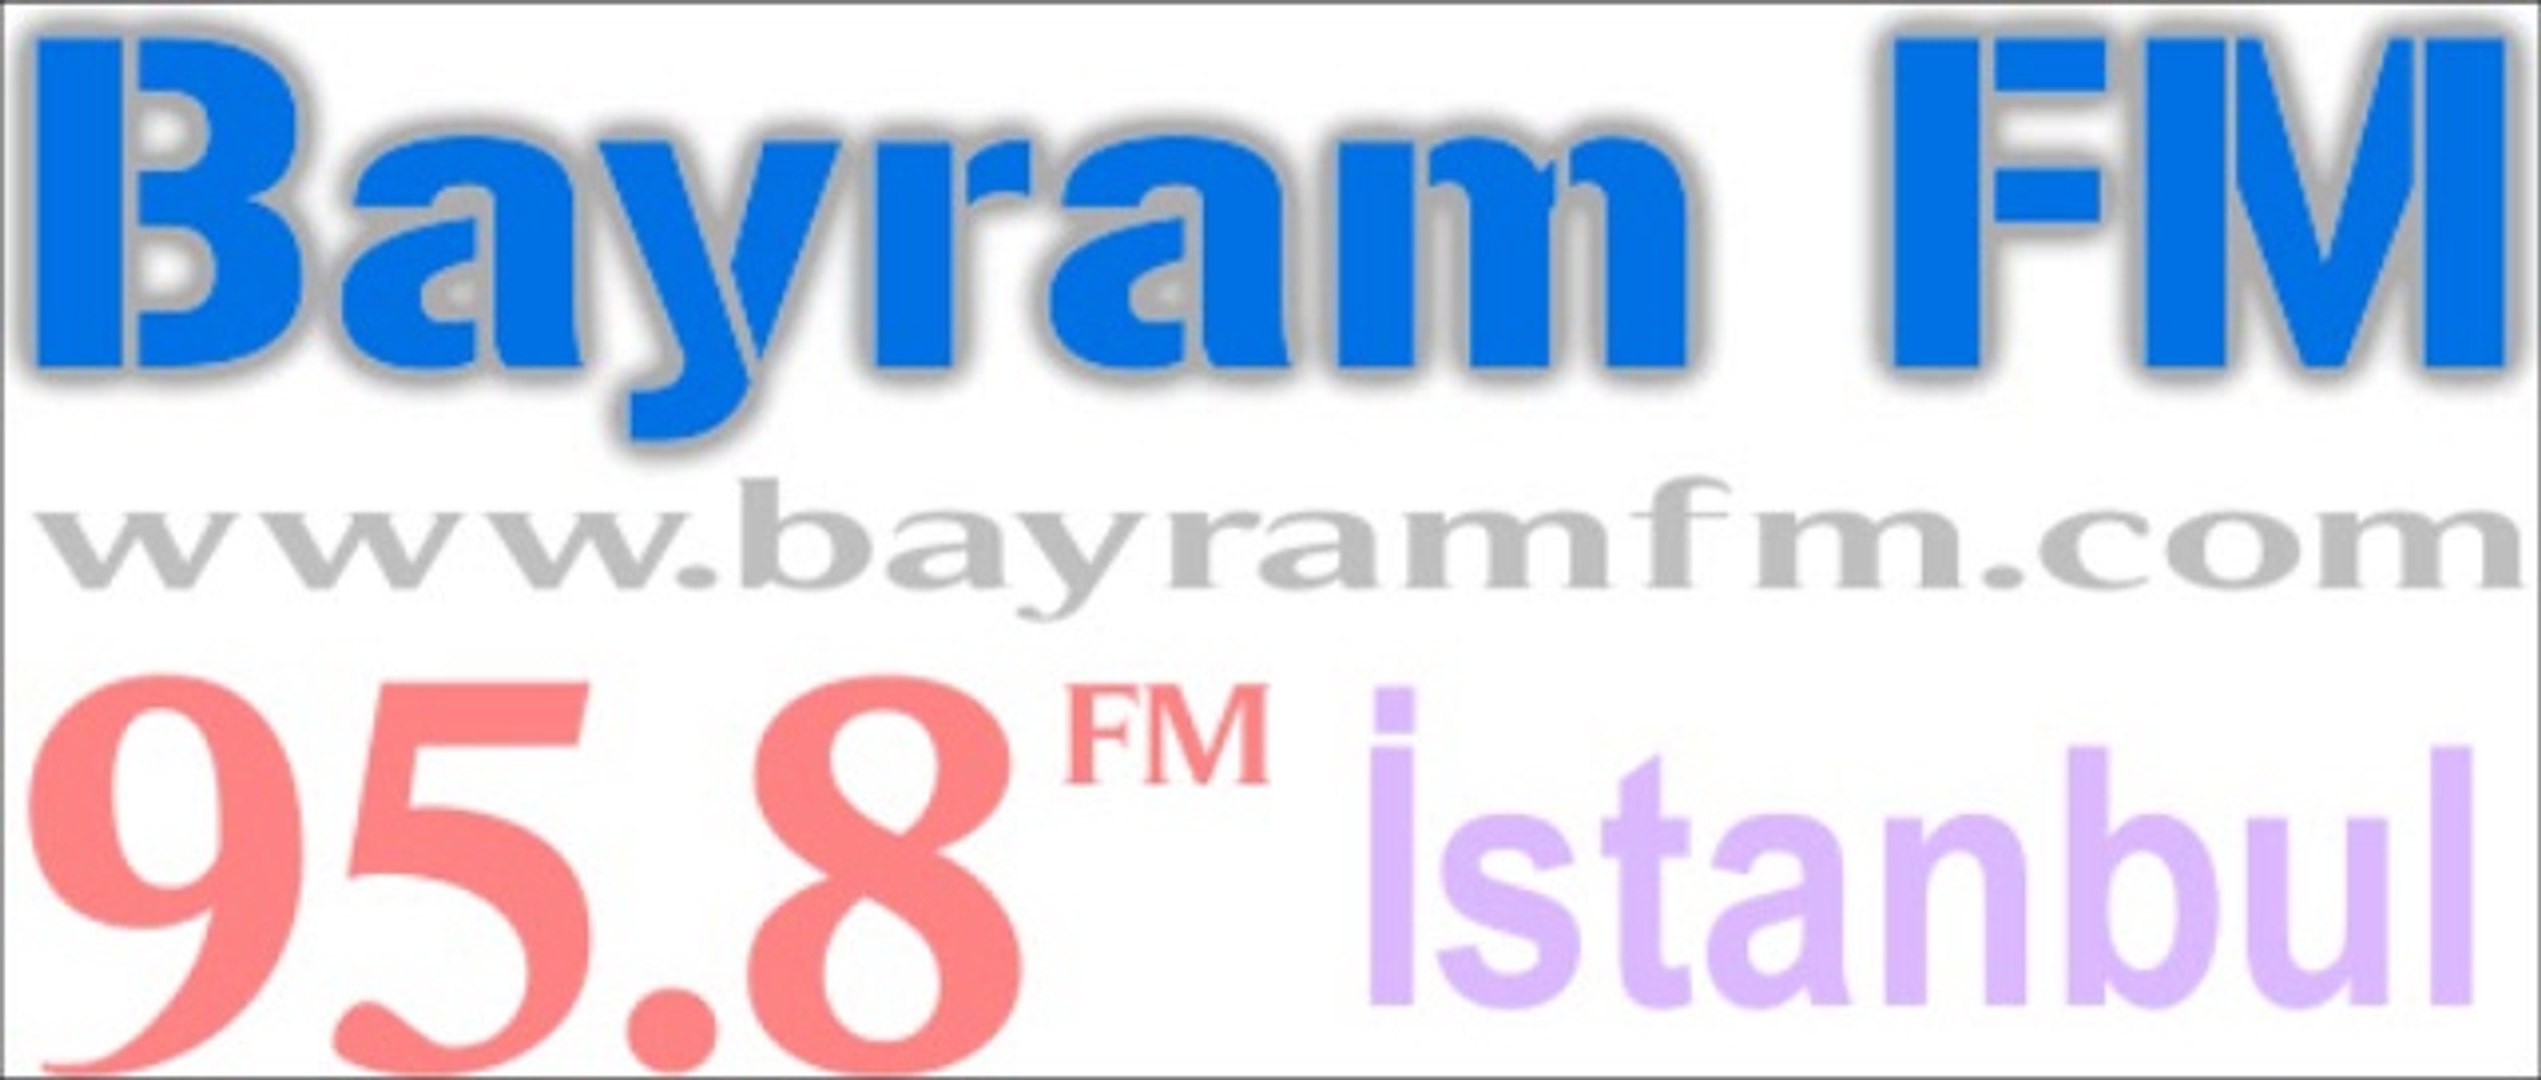 Uitdrukkelijk Vrijgevig Wreedheid bayram fm radyo frekans werkgelegenheid  Correctie bijtend